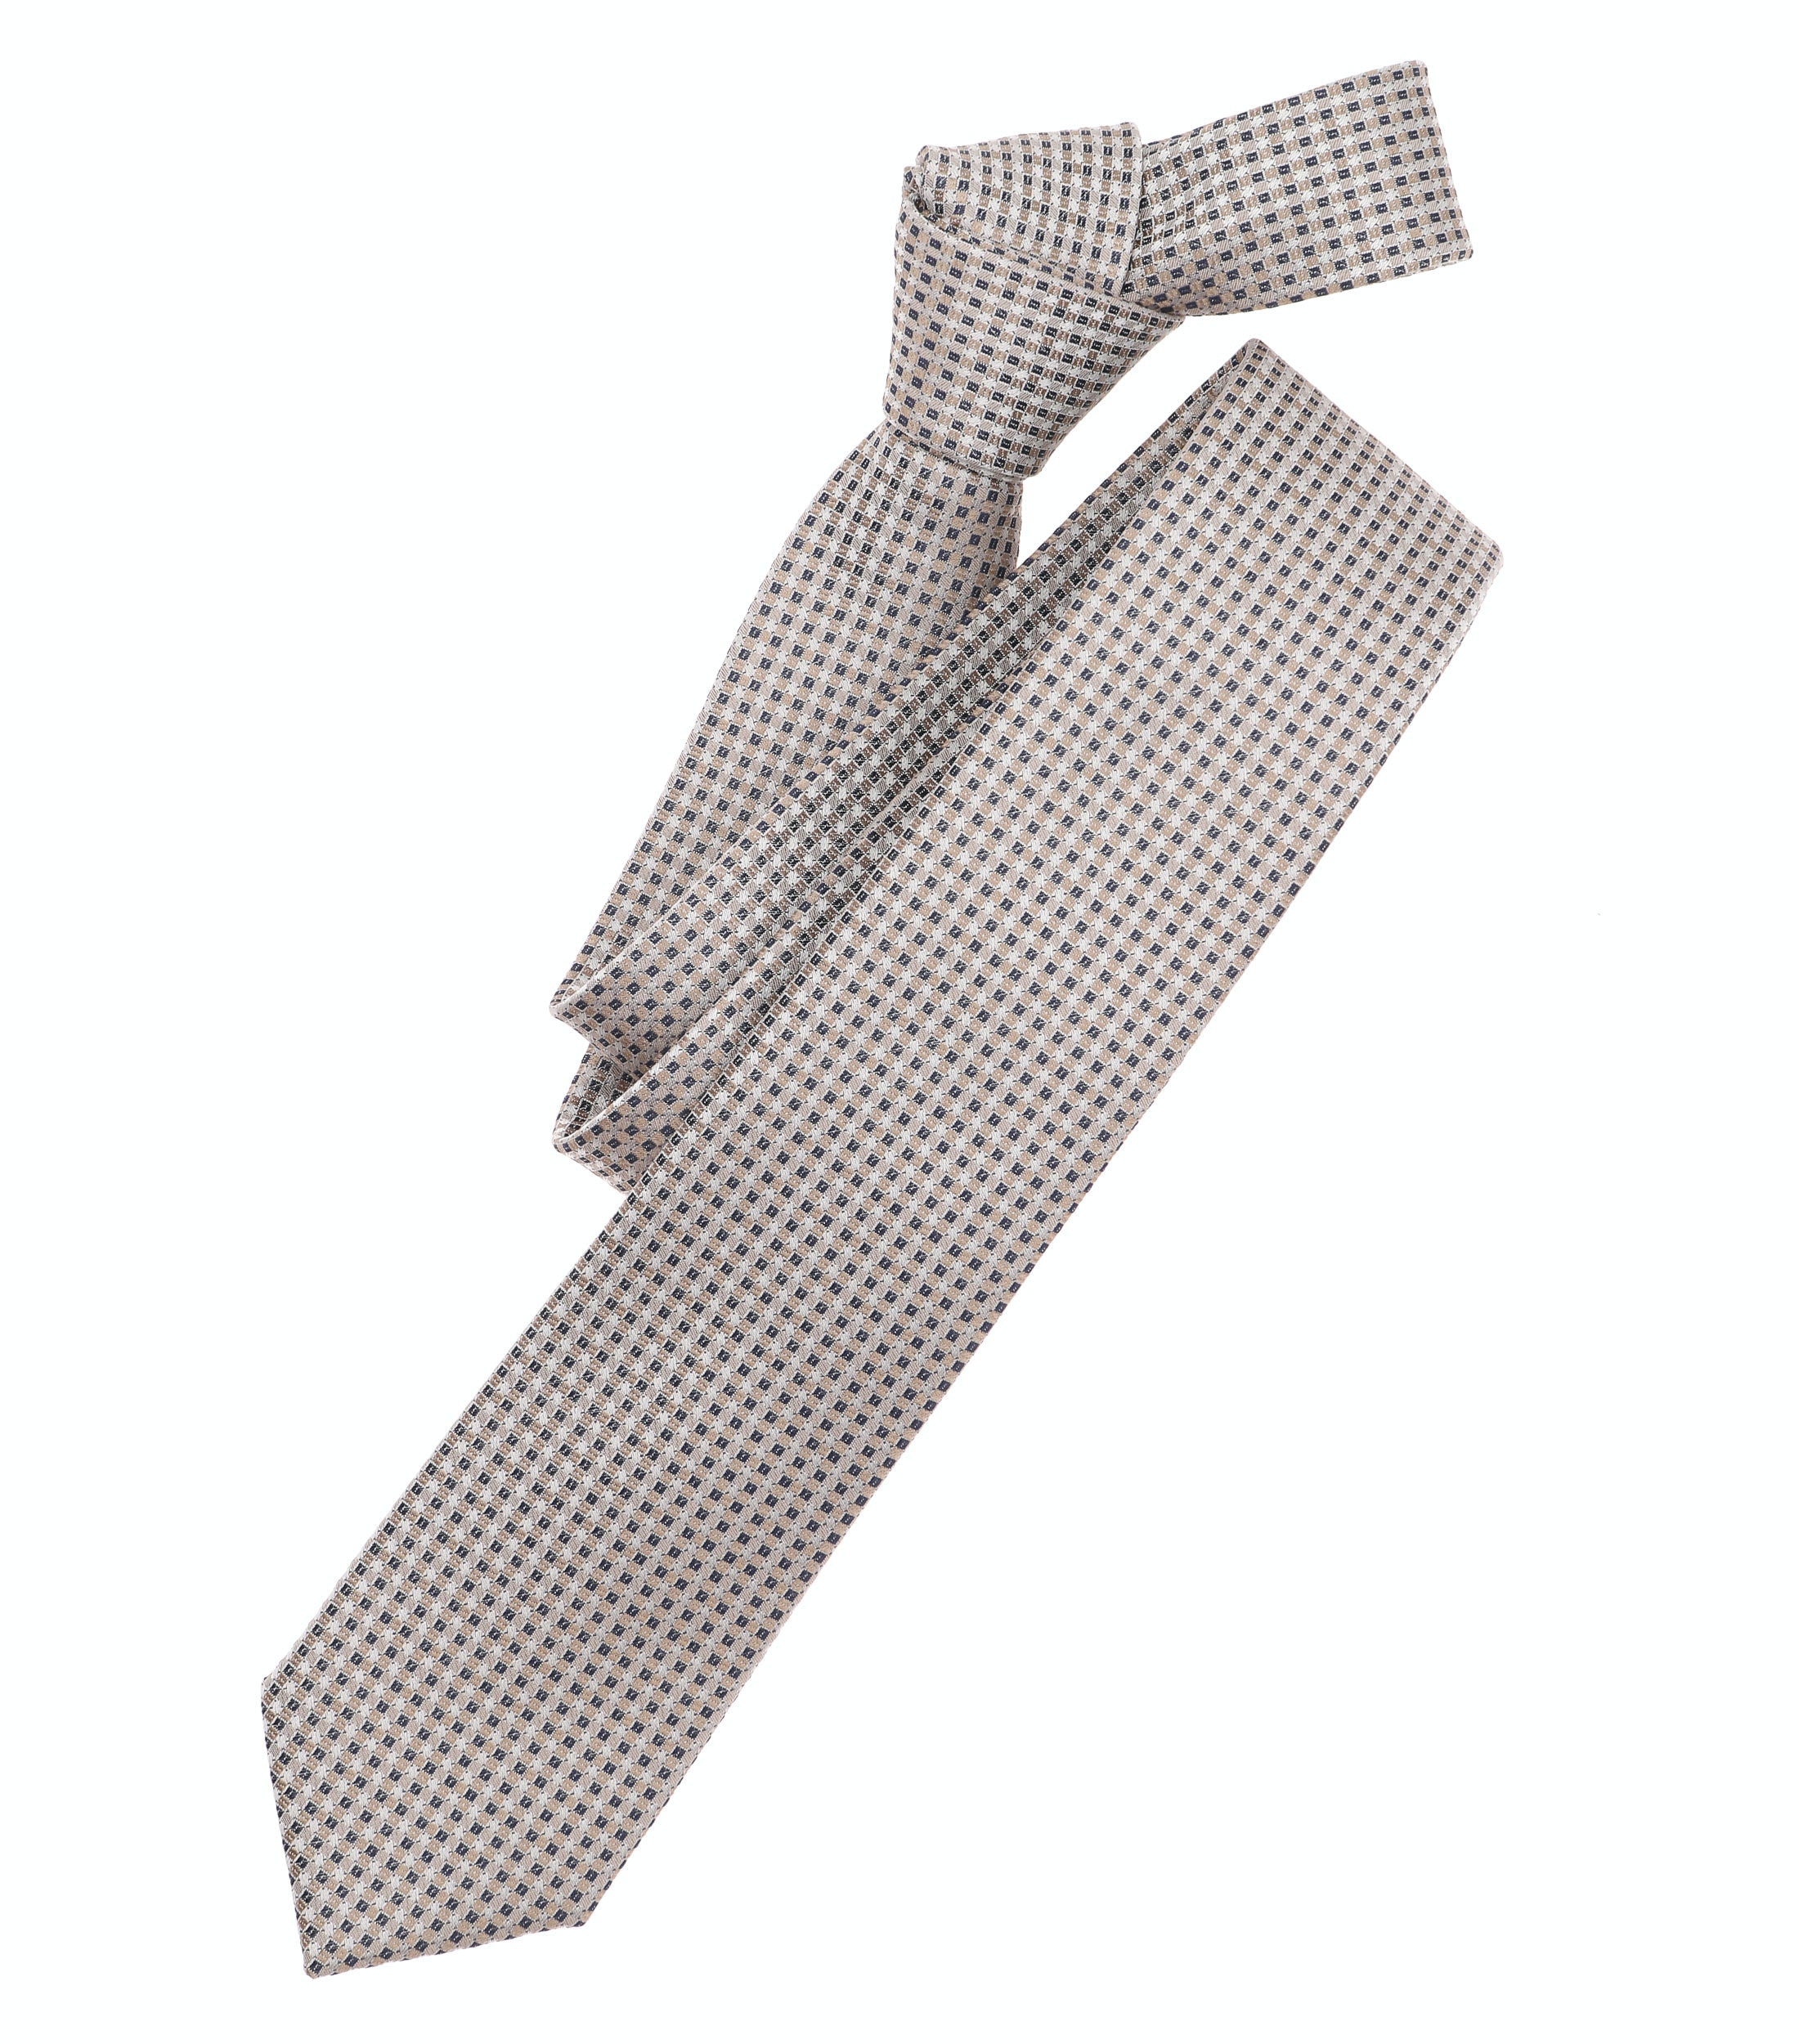 Krawatte